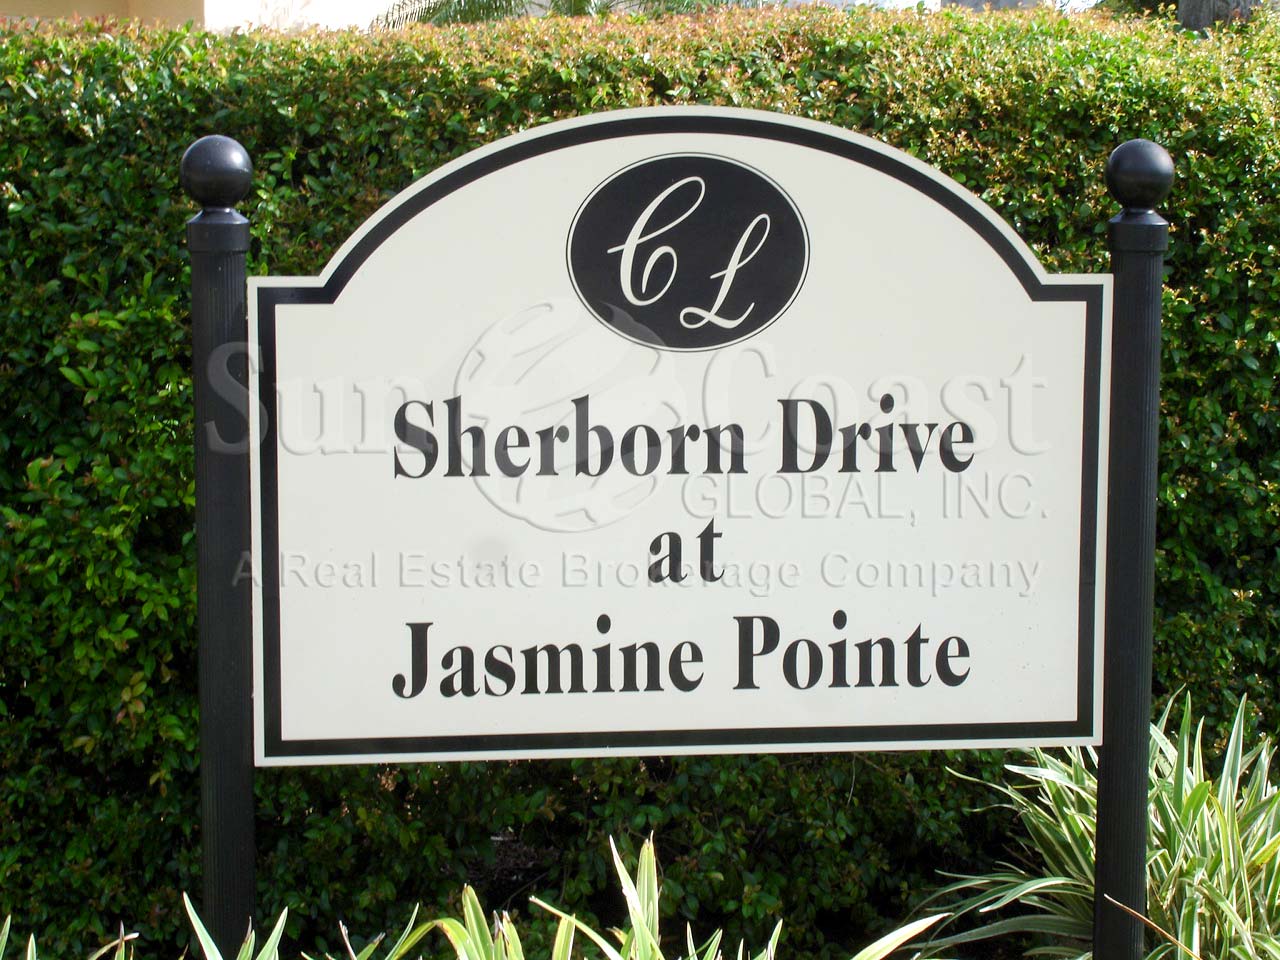 Jasmine Pointe sign